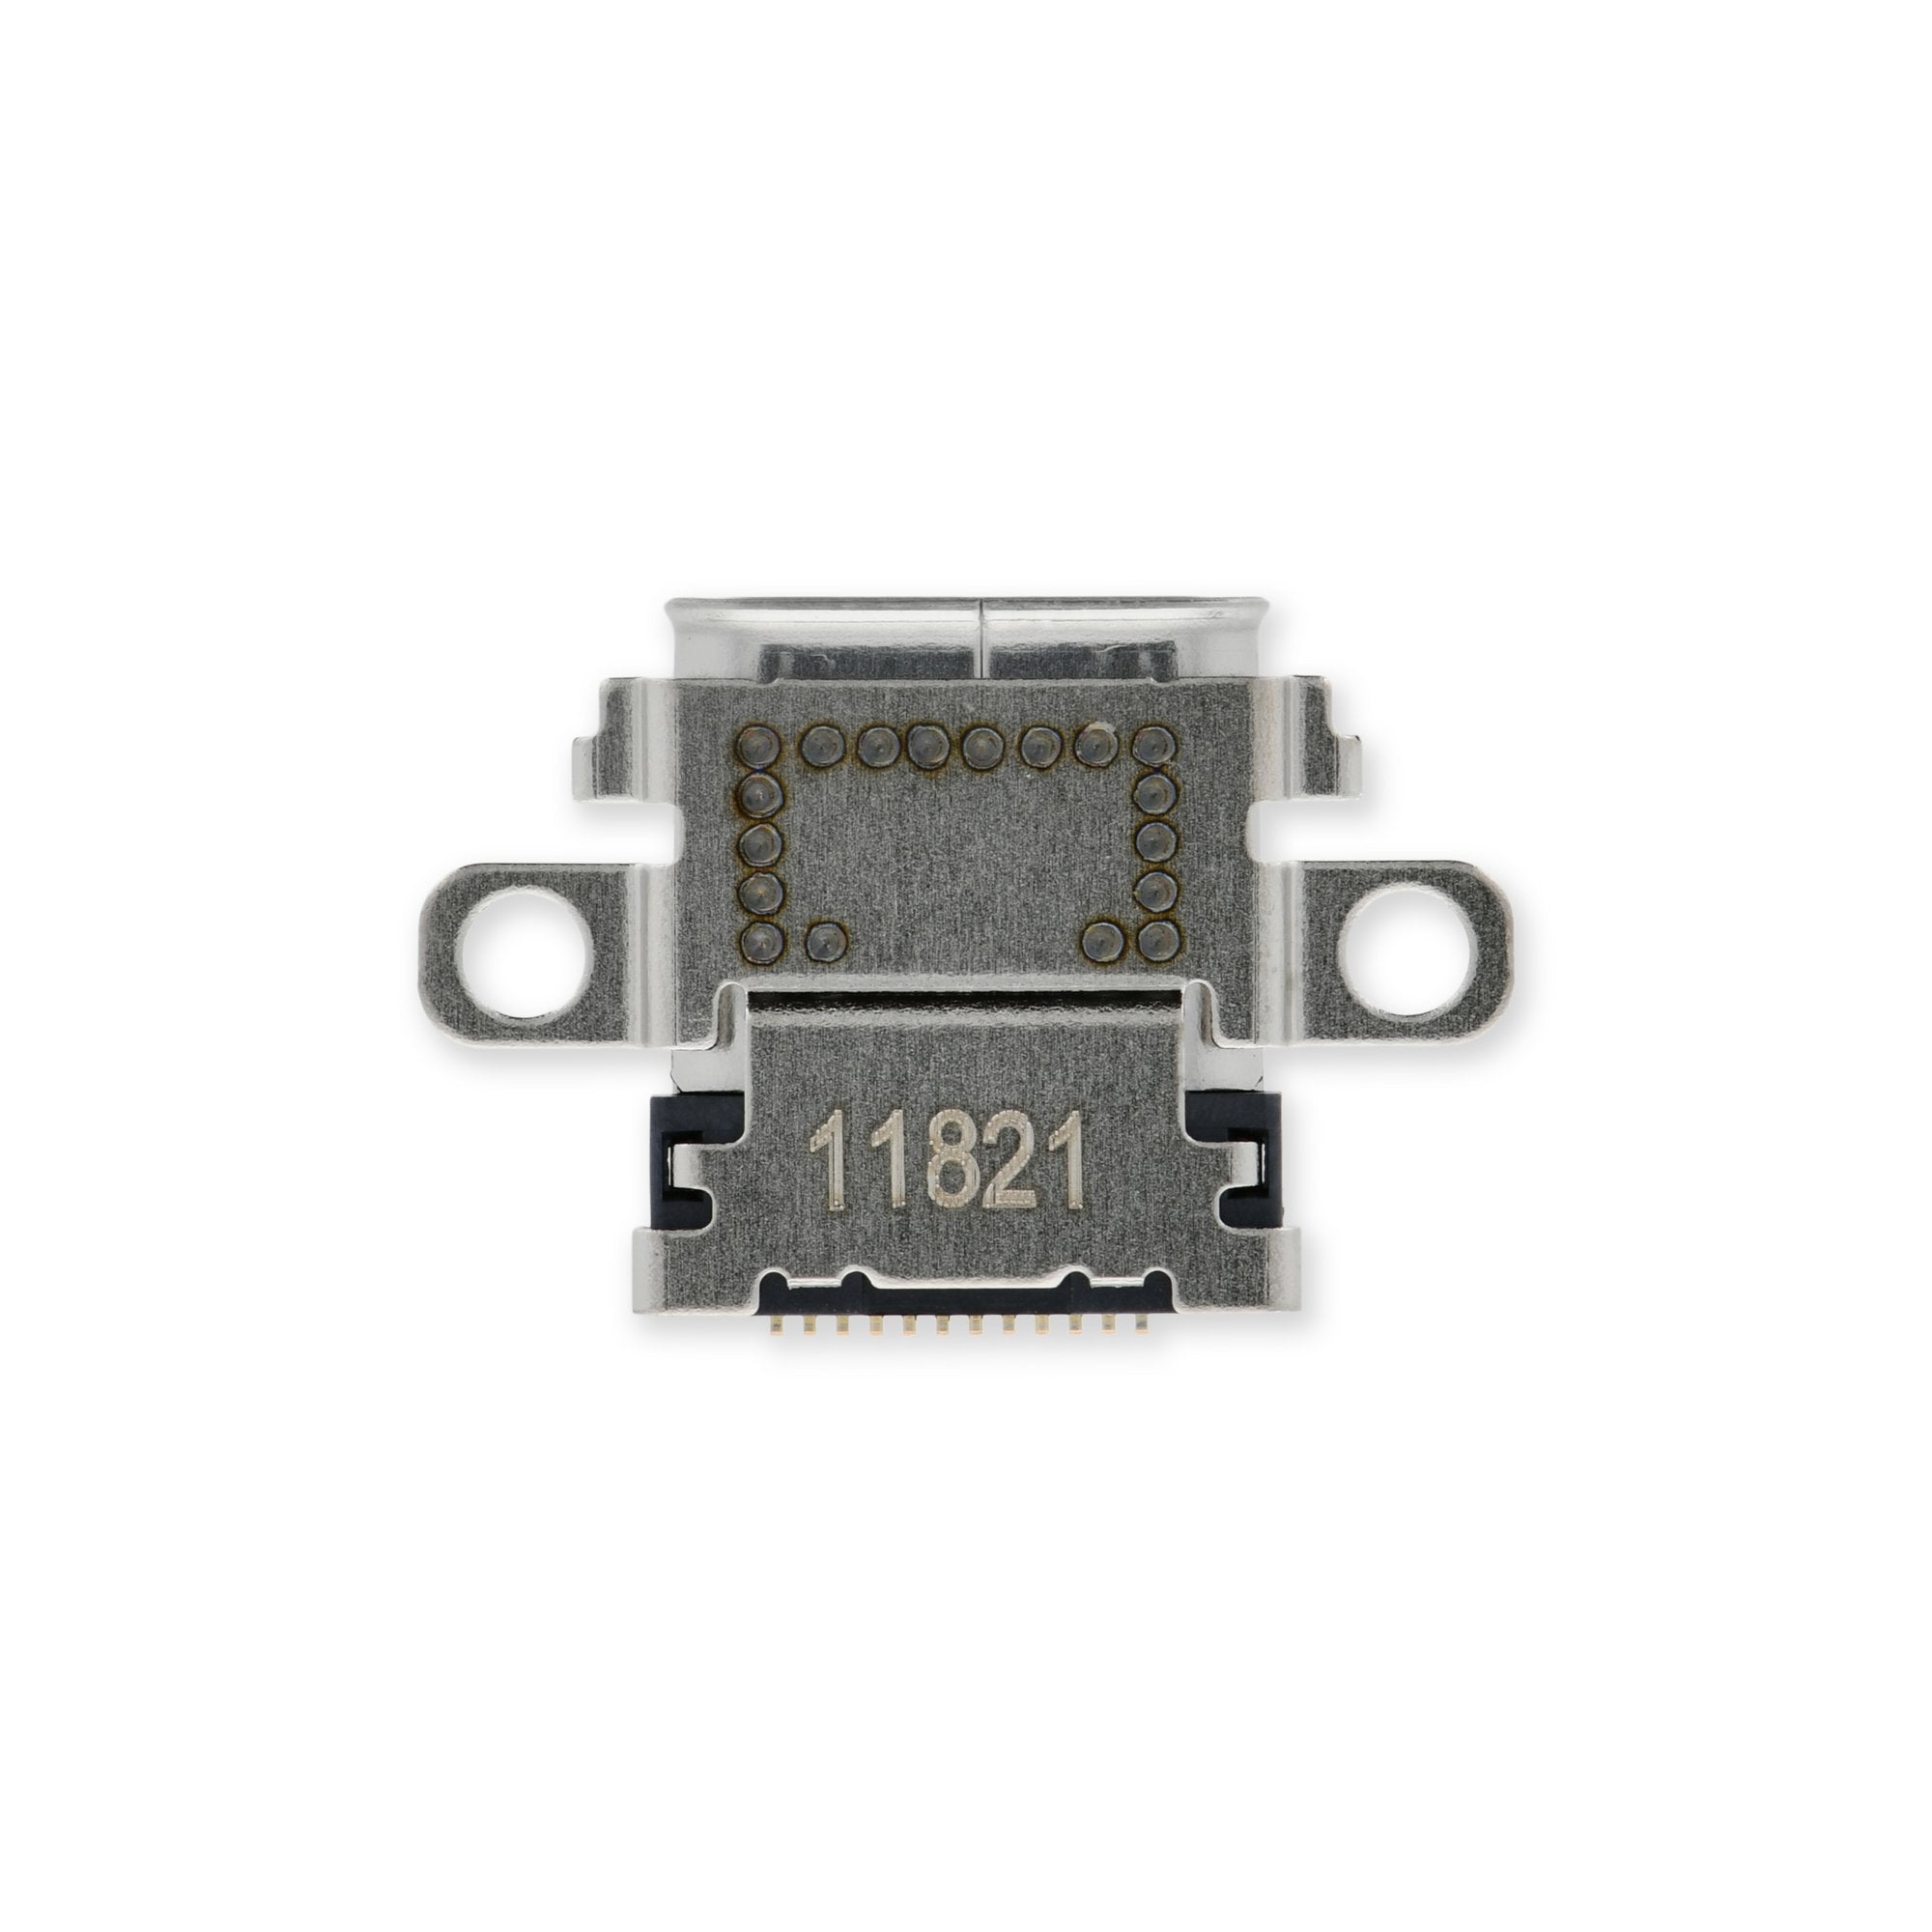 Changement port USB-C station d'accueil Nintendo Switch modèle OLED -  Tutoriel de réparation iFixit